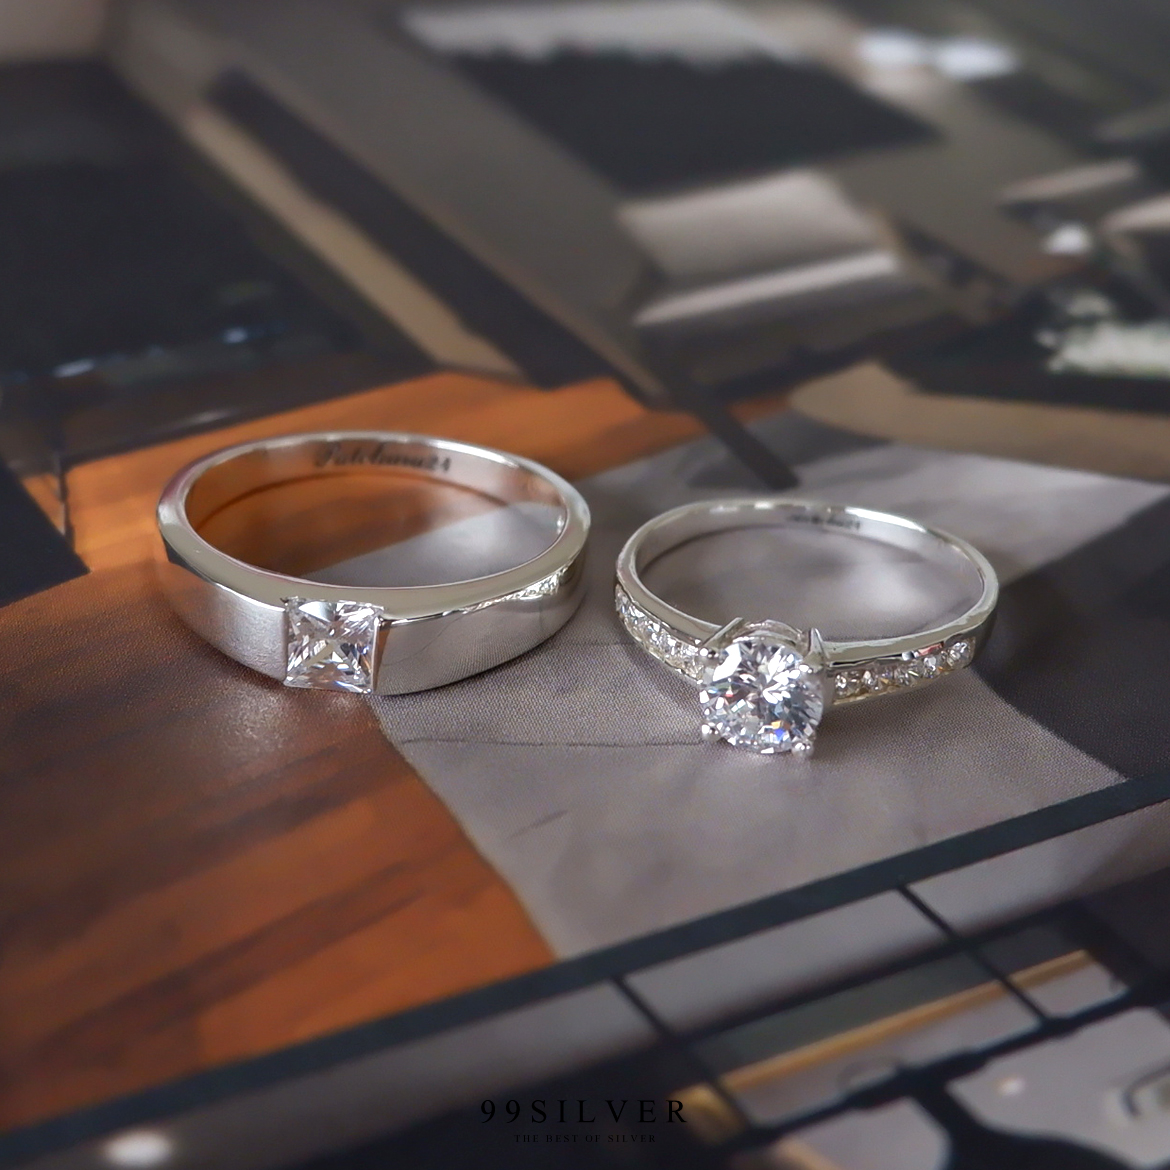 แหวนคู่รัก เพชรเม็ดเหลี่ยม Diamond Cut และเพชรชู 5 มิลลิเมตร